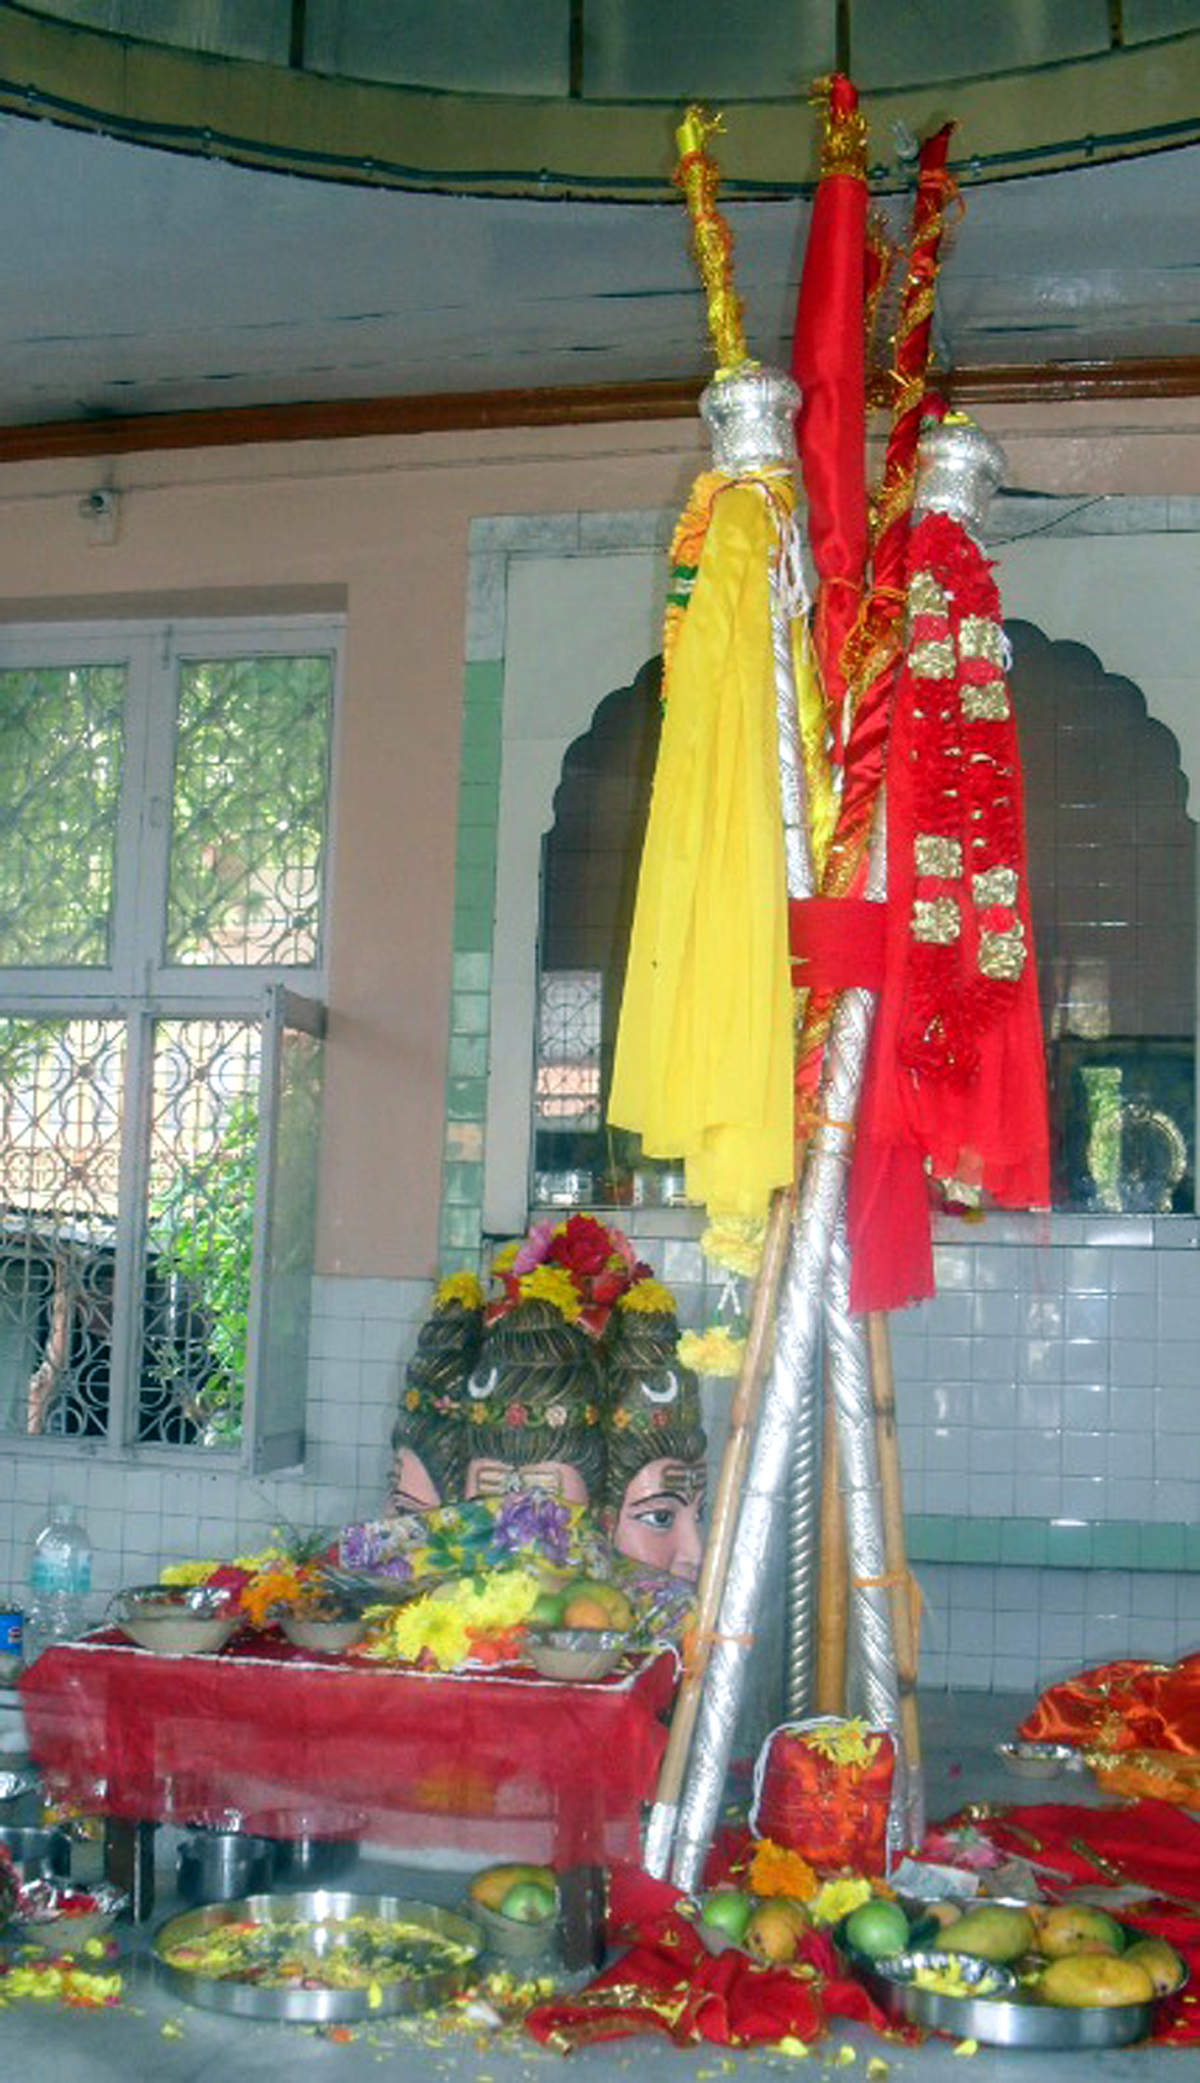 Chhari Mubarak of Shri Amarnathji at its abode Dashnami Akhara, Srinagar on Tuesday.